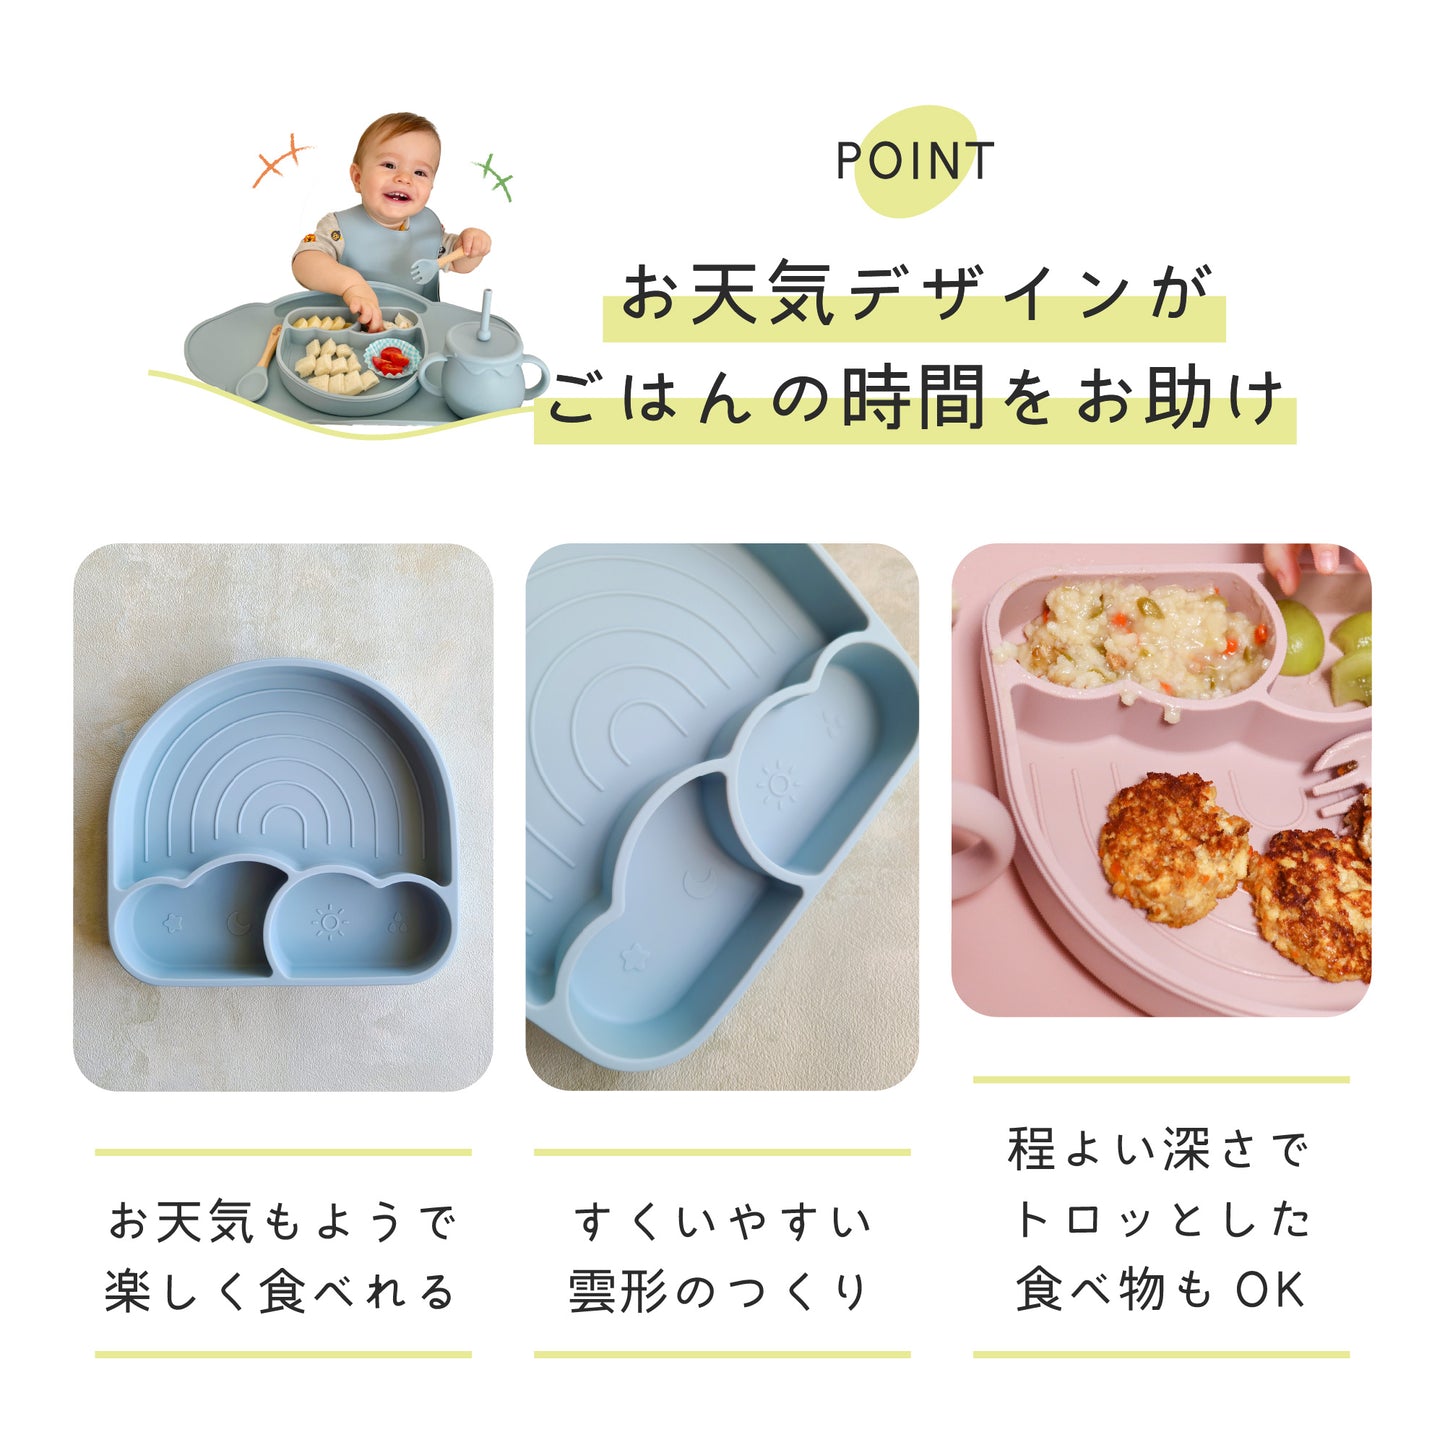 【お天気プレート】 離乳食食器 シリコン ベビー用食器